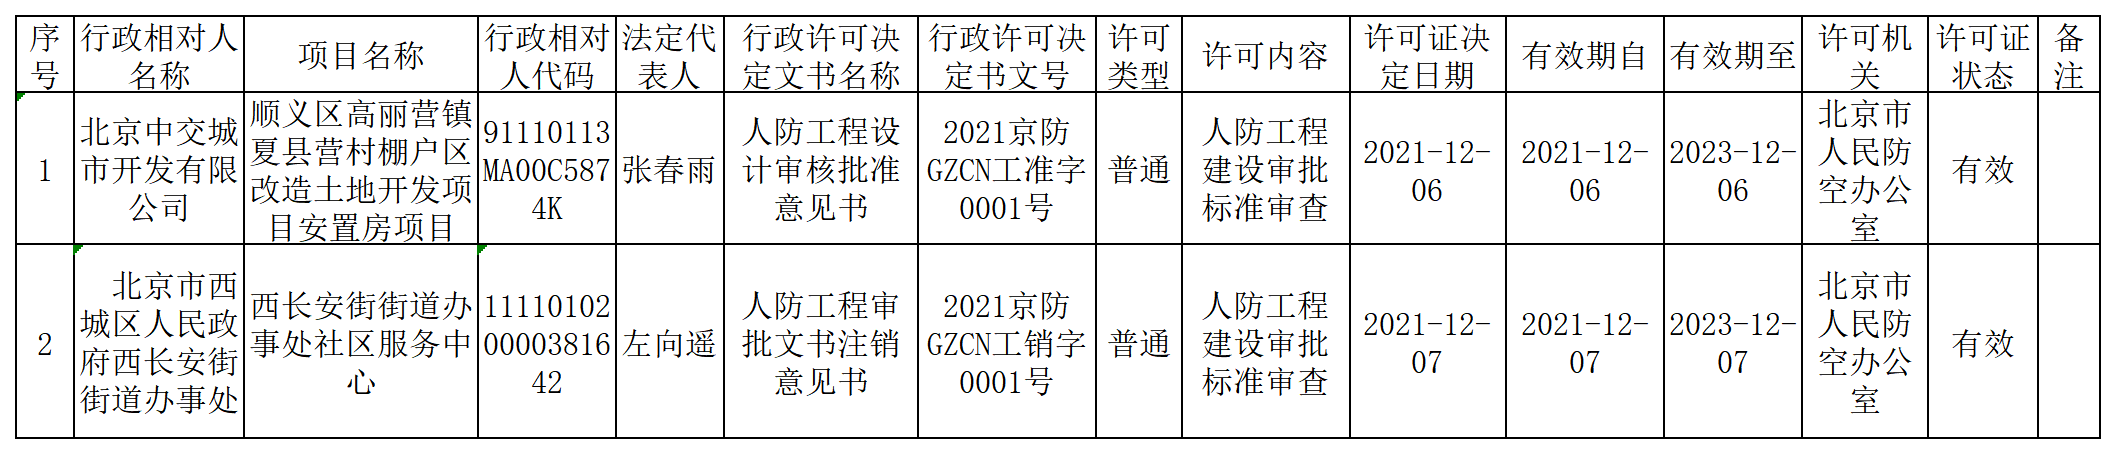 2021京防工准字数据统计(2021.12.1-2021.12.8)左琰.png